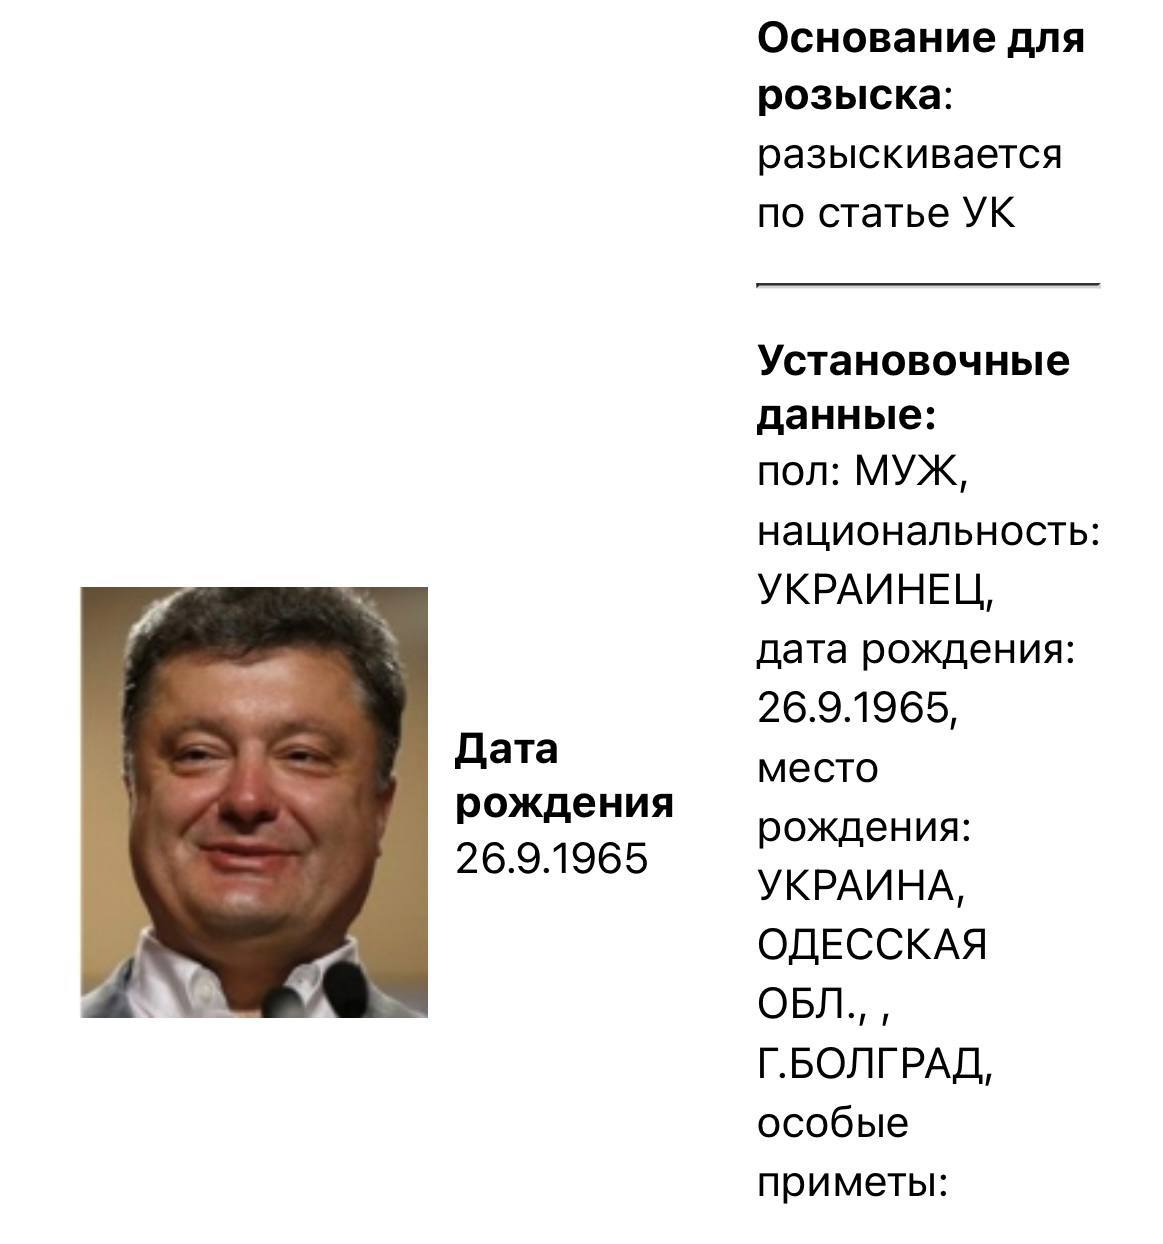 Порошенка слідом за Зеленським у Росії оголошено у розшук фото 1 qkxiqdxiqdeihrant